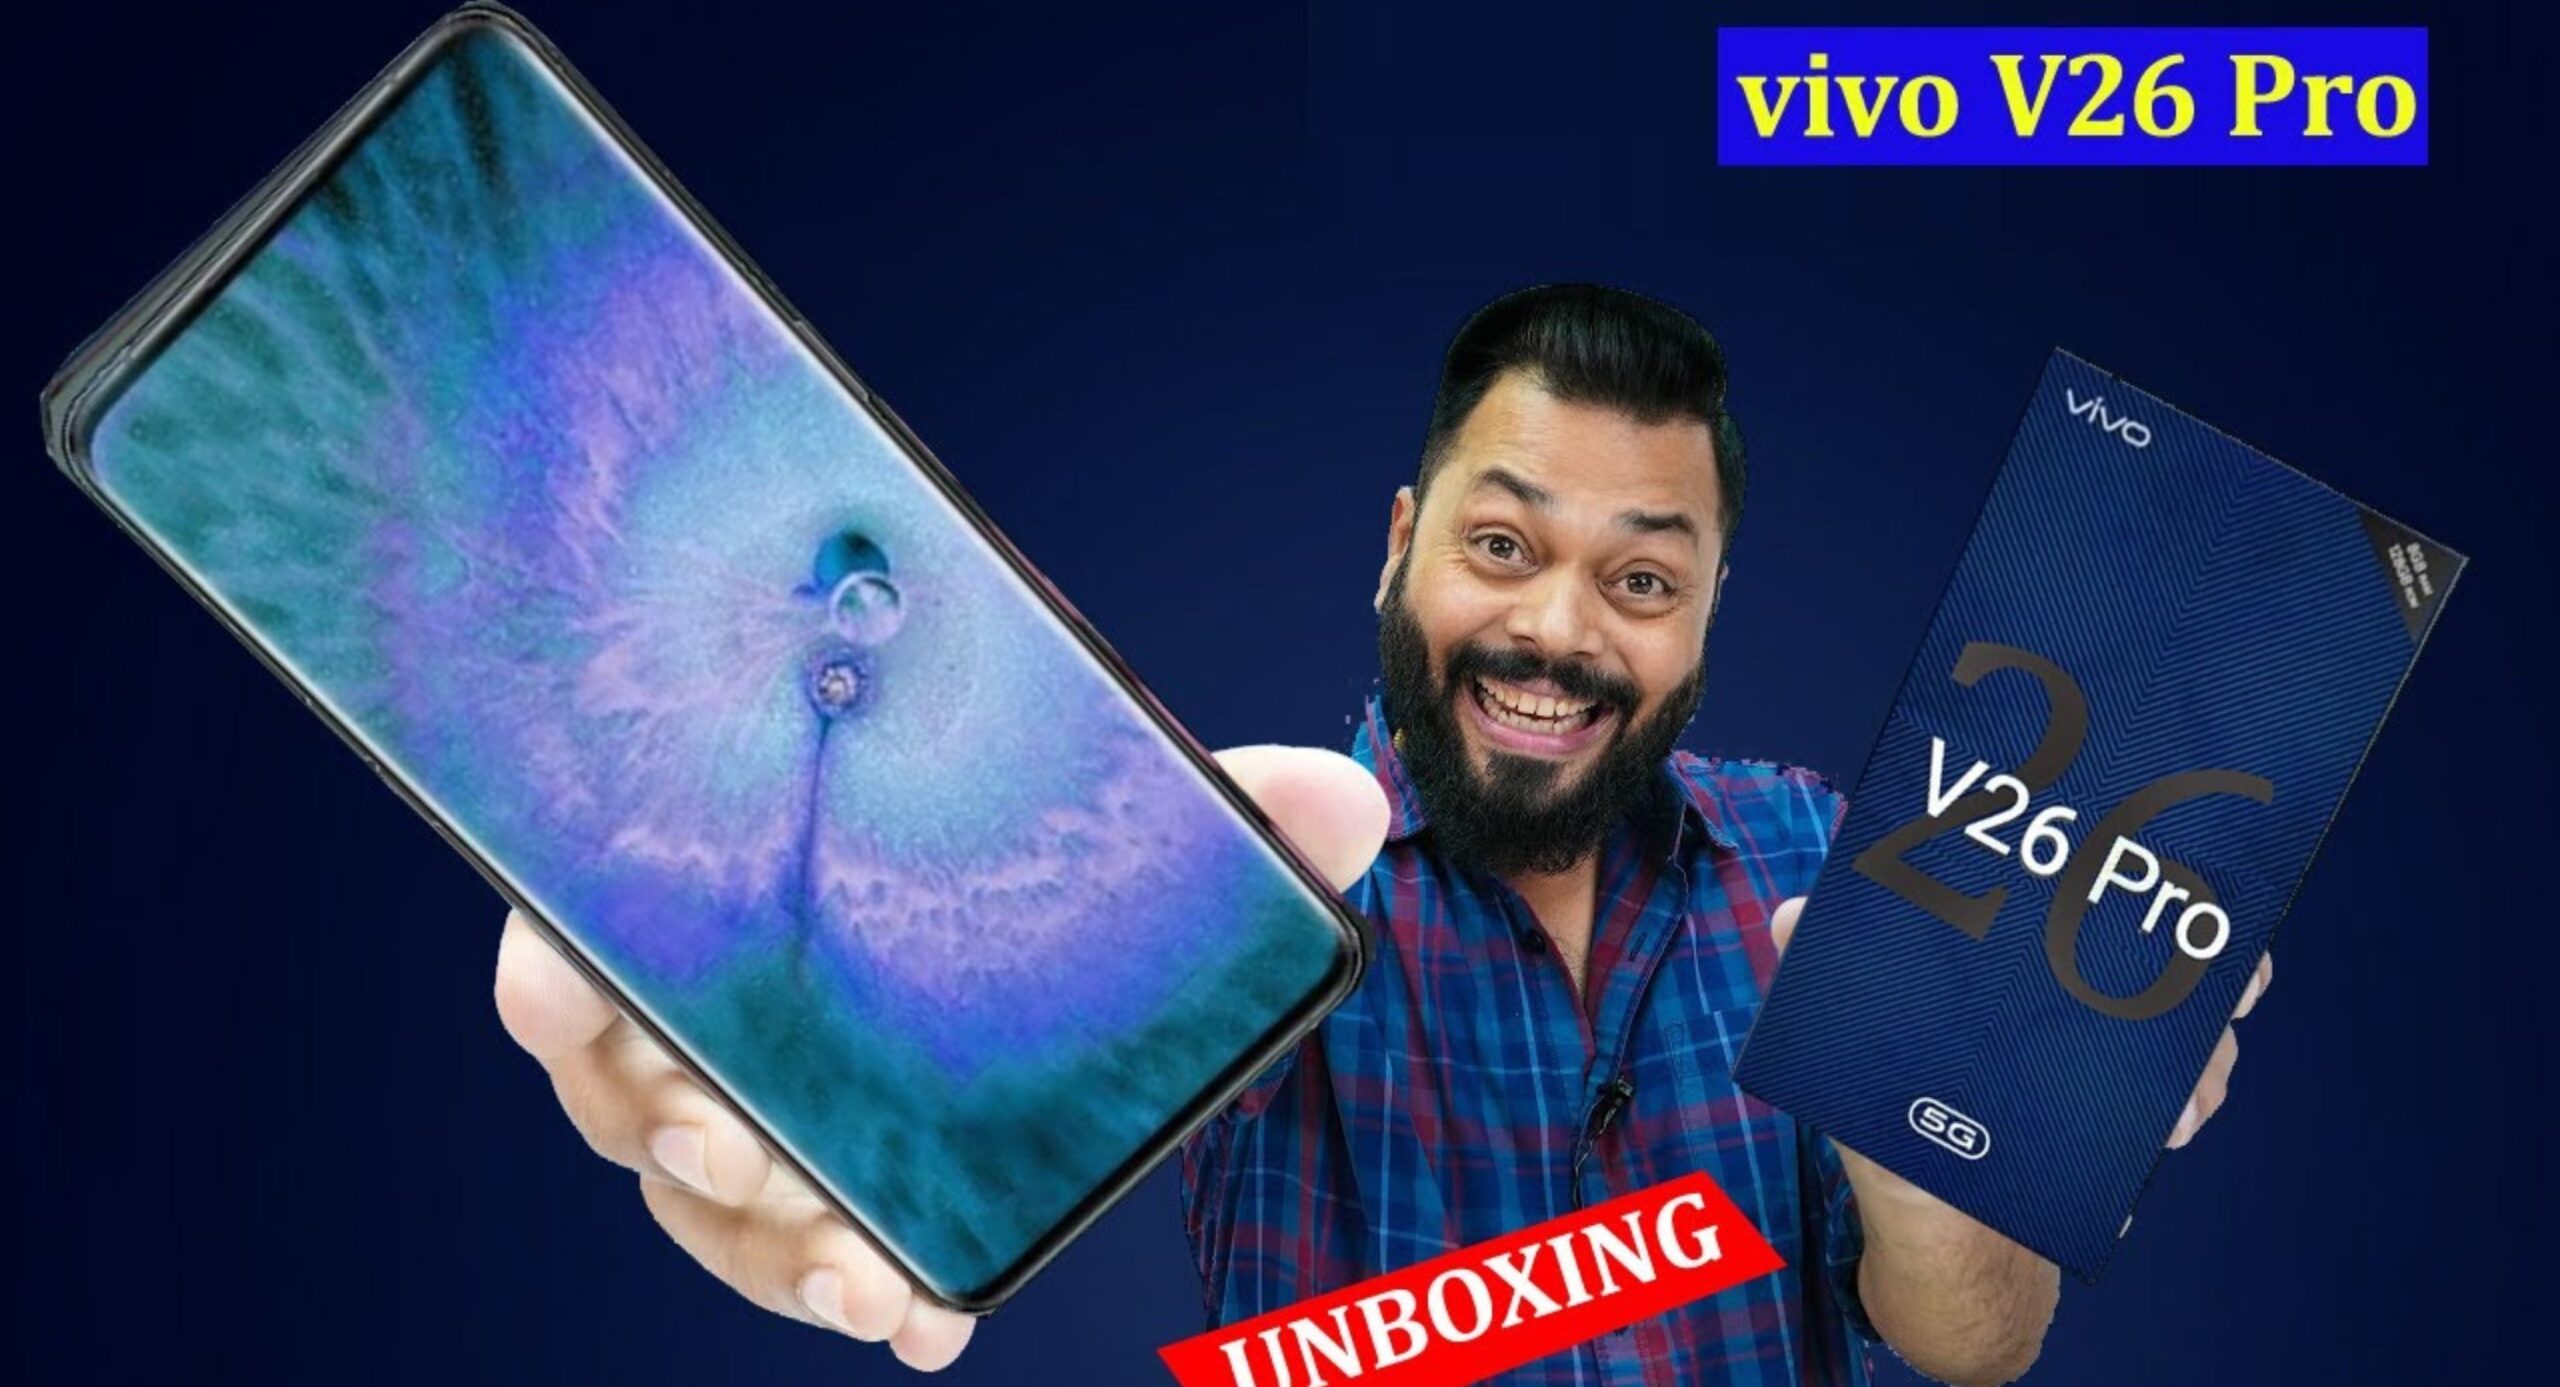 Vivo V26 Pro 5G New Smartphone